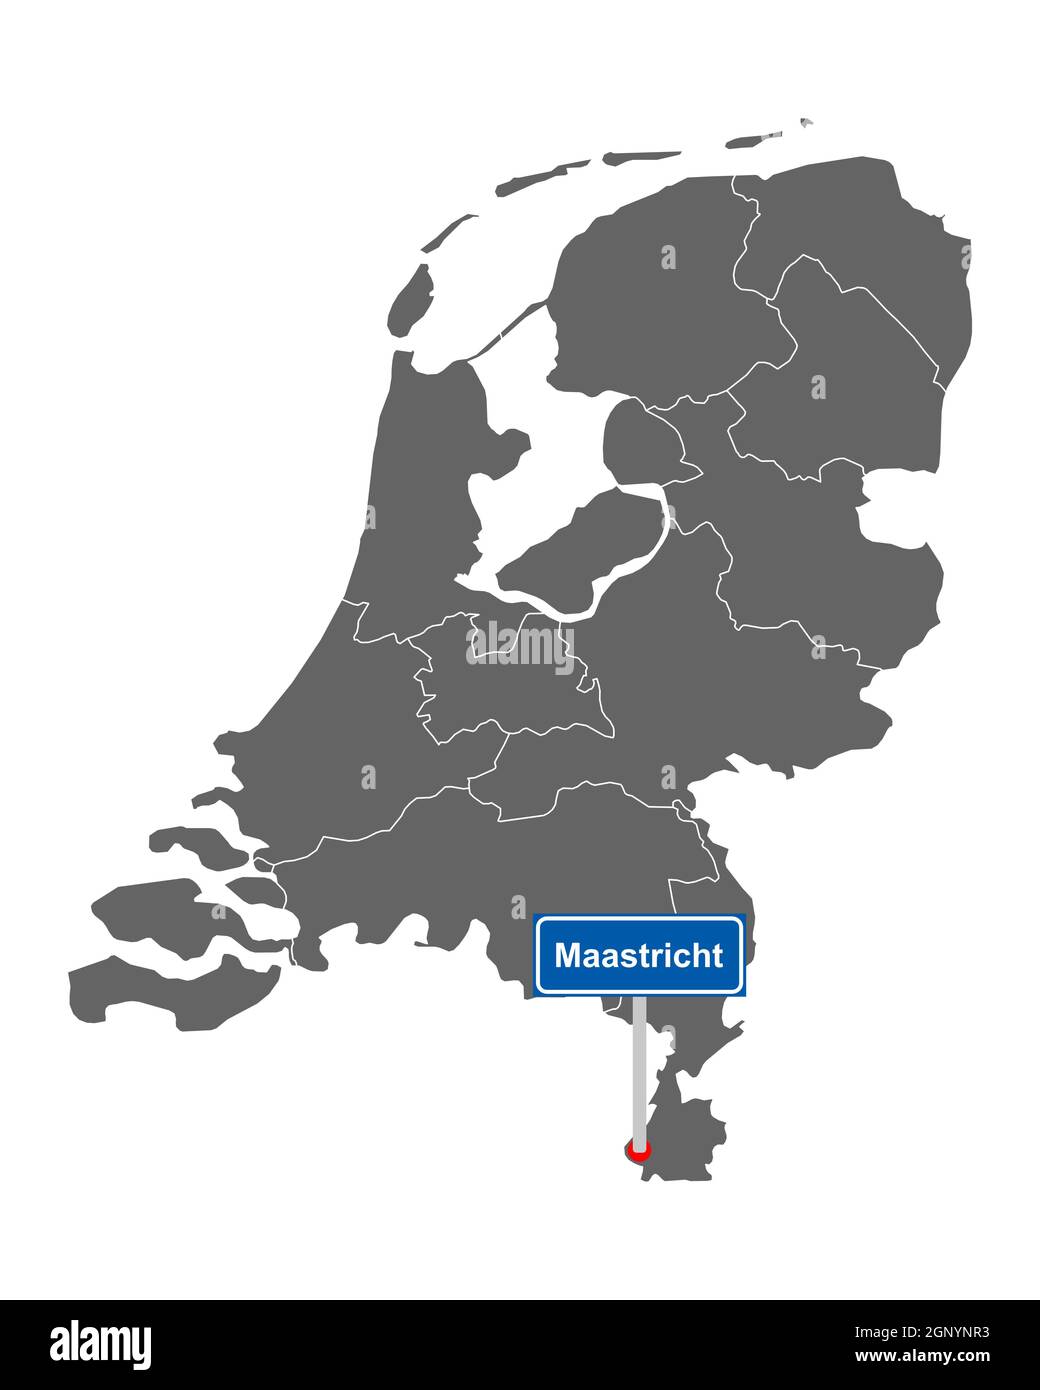 Landkarte der Niederlande mit Orstsschild Maastricht Foto Stock